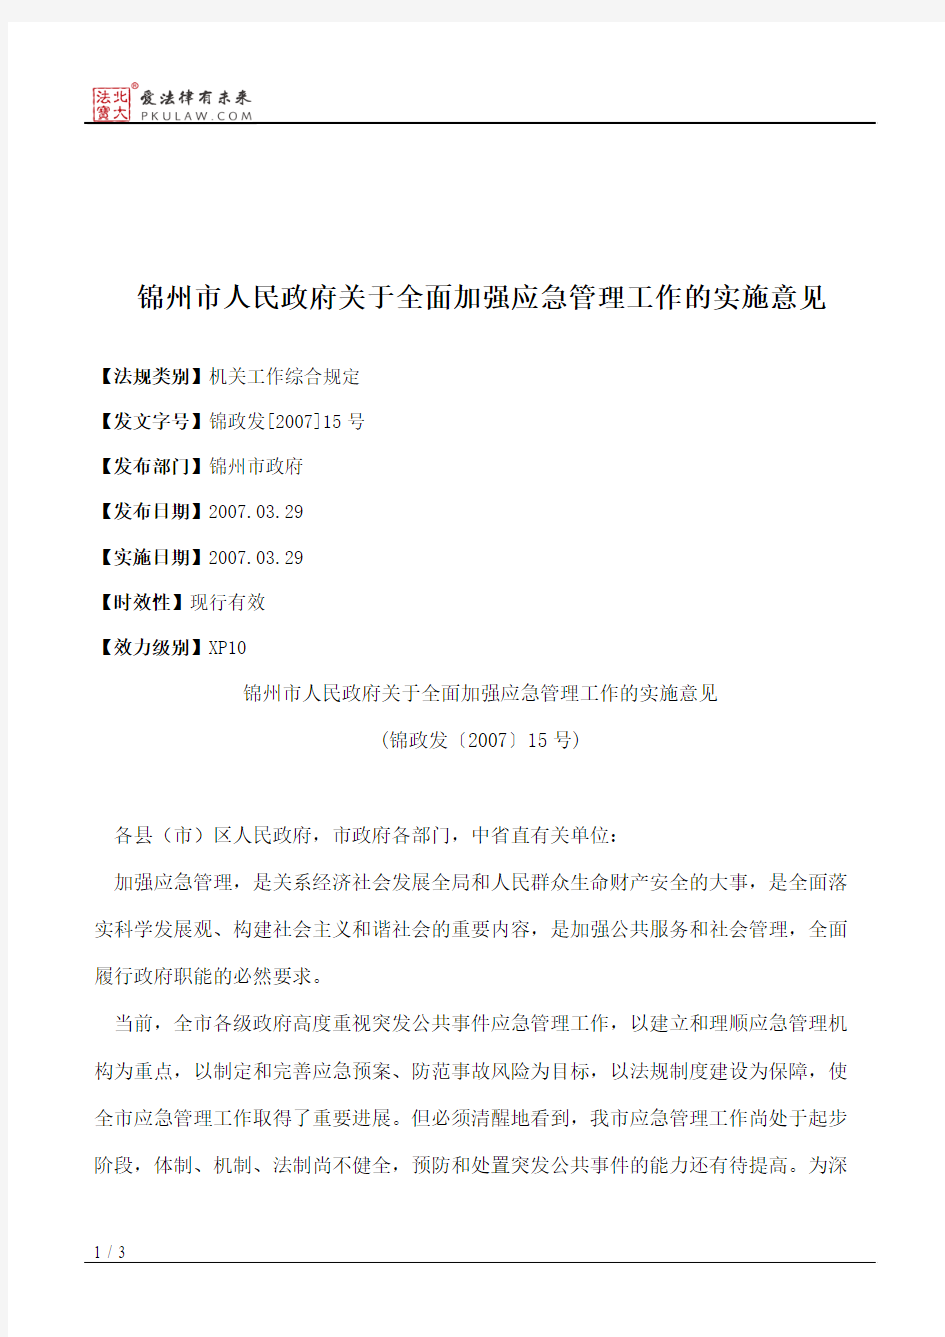 锦州市人民政府关于全面加强应急管理工作的实施意见